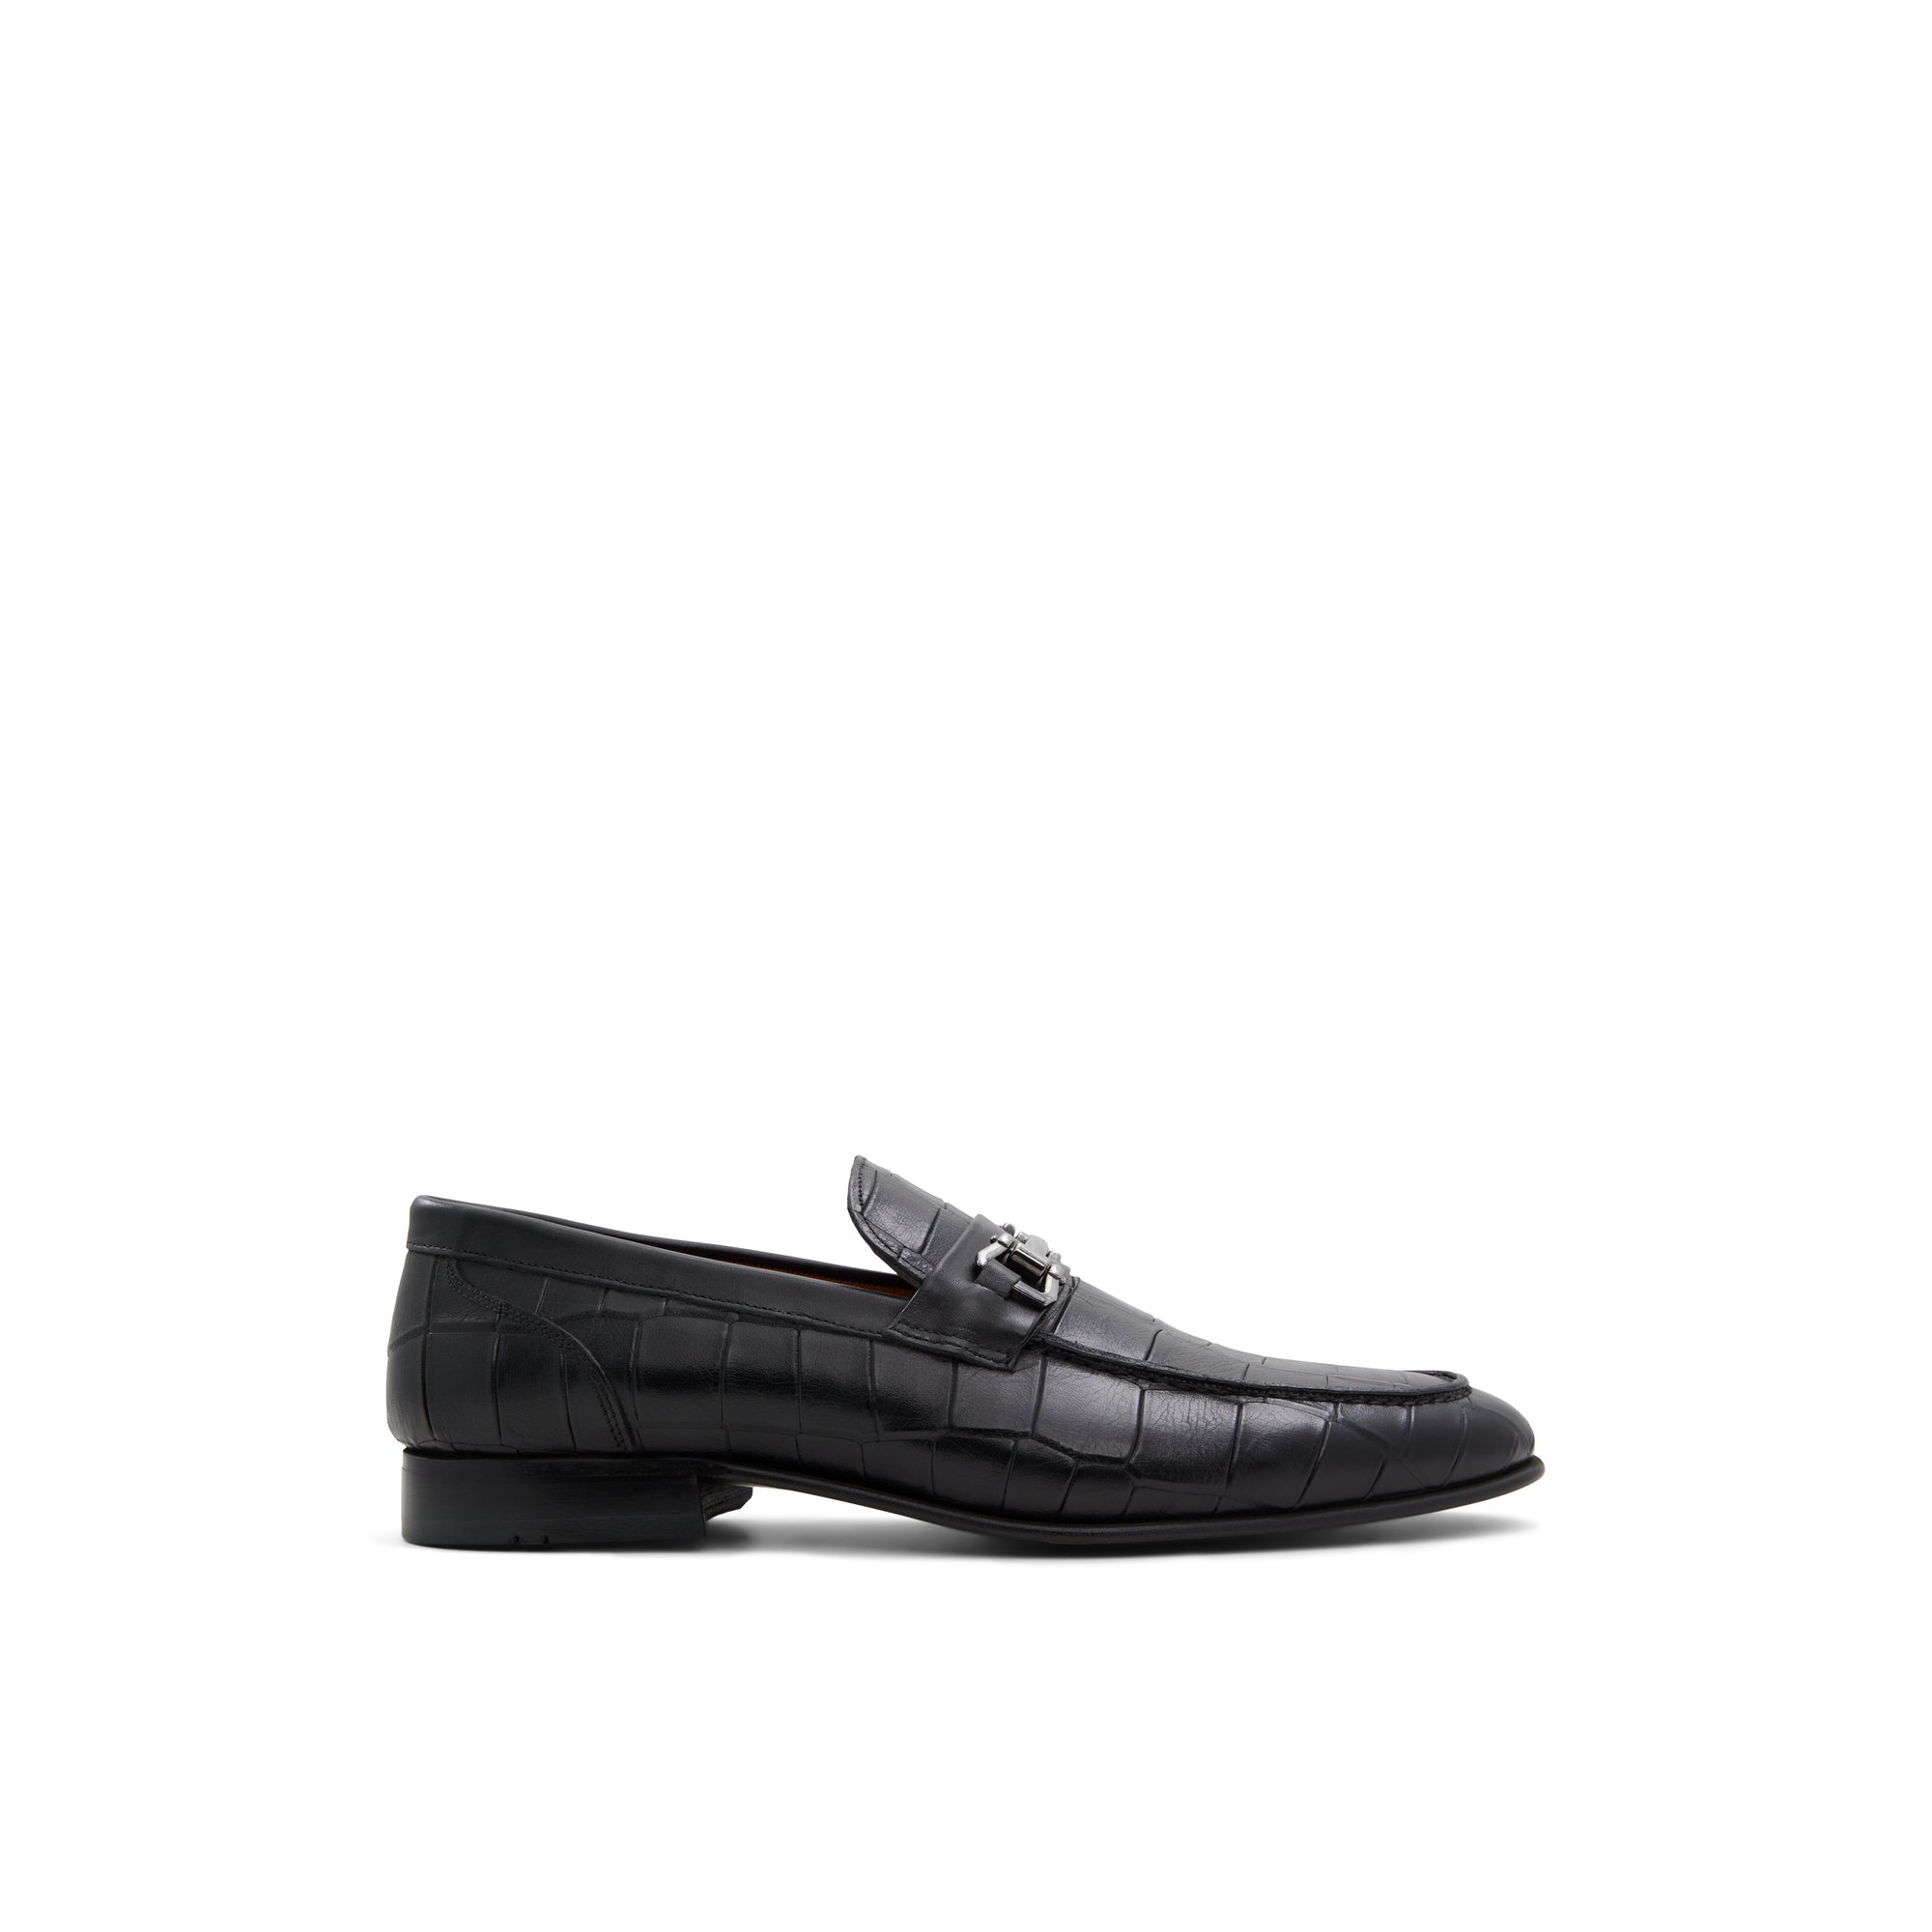 ALDO Esco - Men's Loafers and Slip Ons - Black